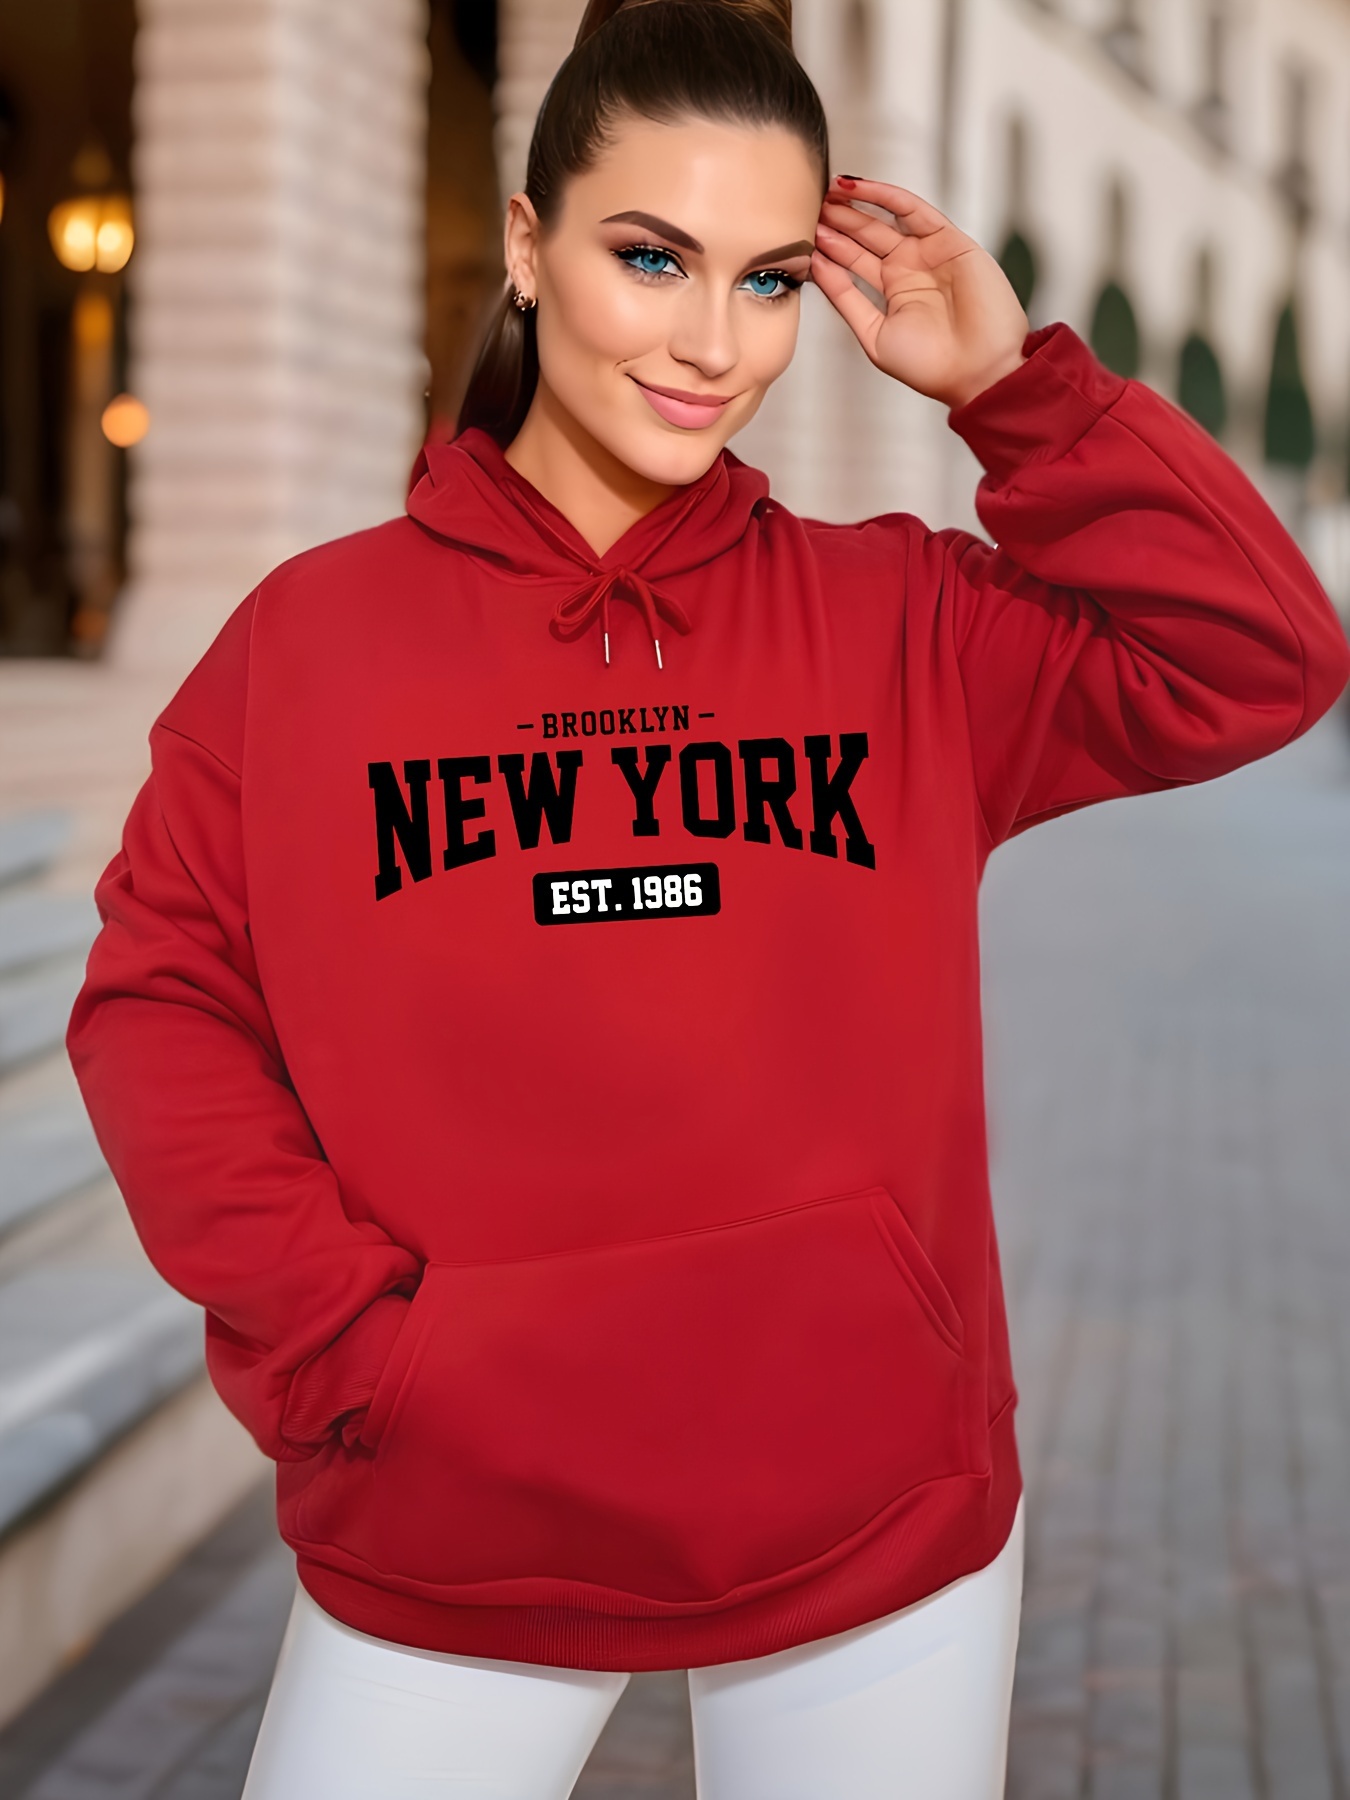 New York Hoodie  Women hoodies sweatshirts, Hoodies womens, Hoody outfits